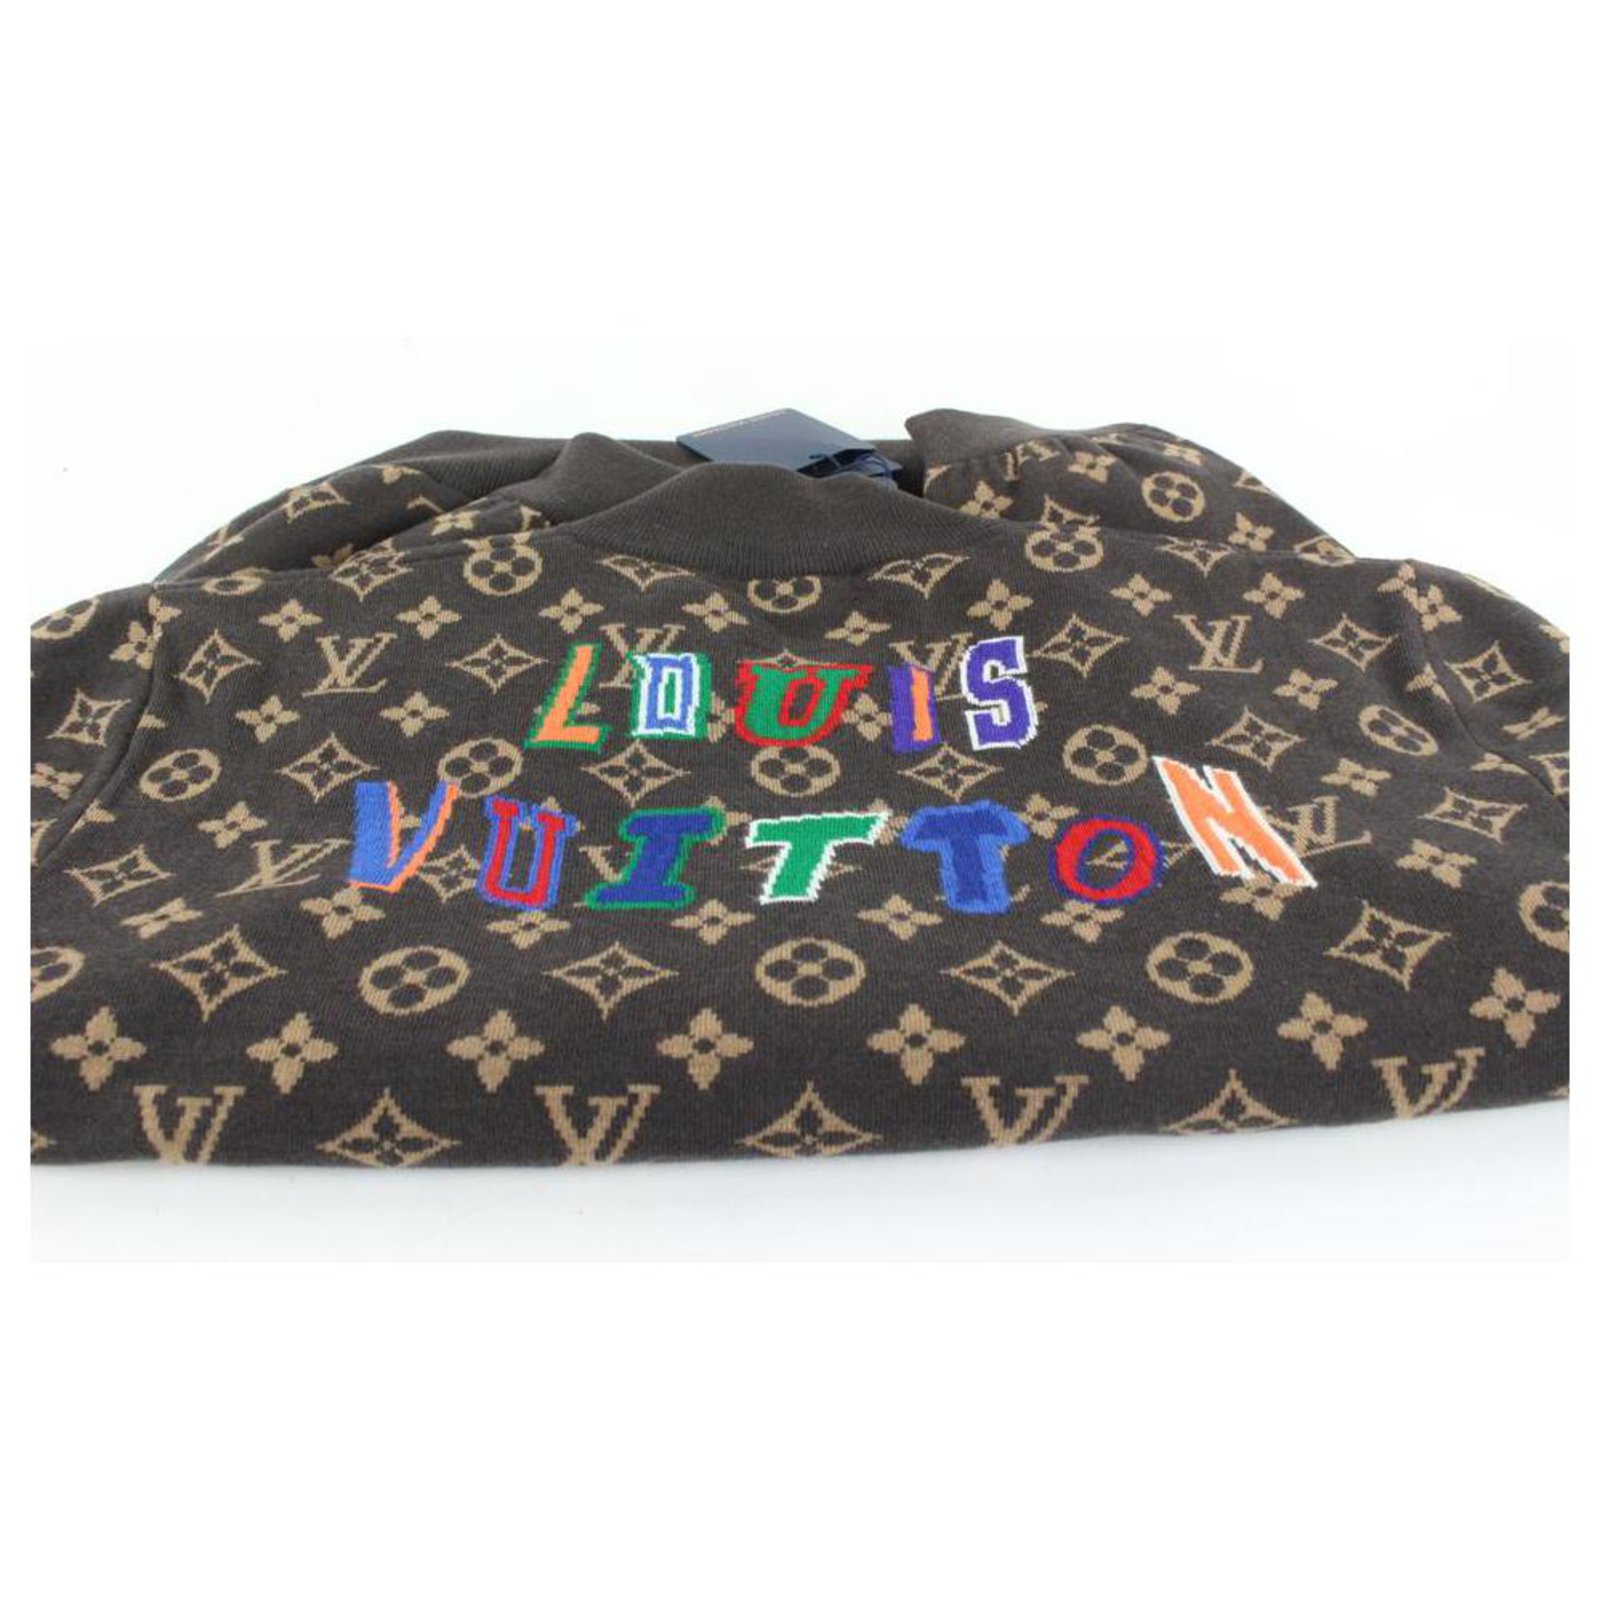 Louis Vuitton Maglione giacca in maglia NBA XXXL LV da uomo nero